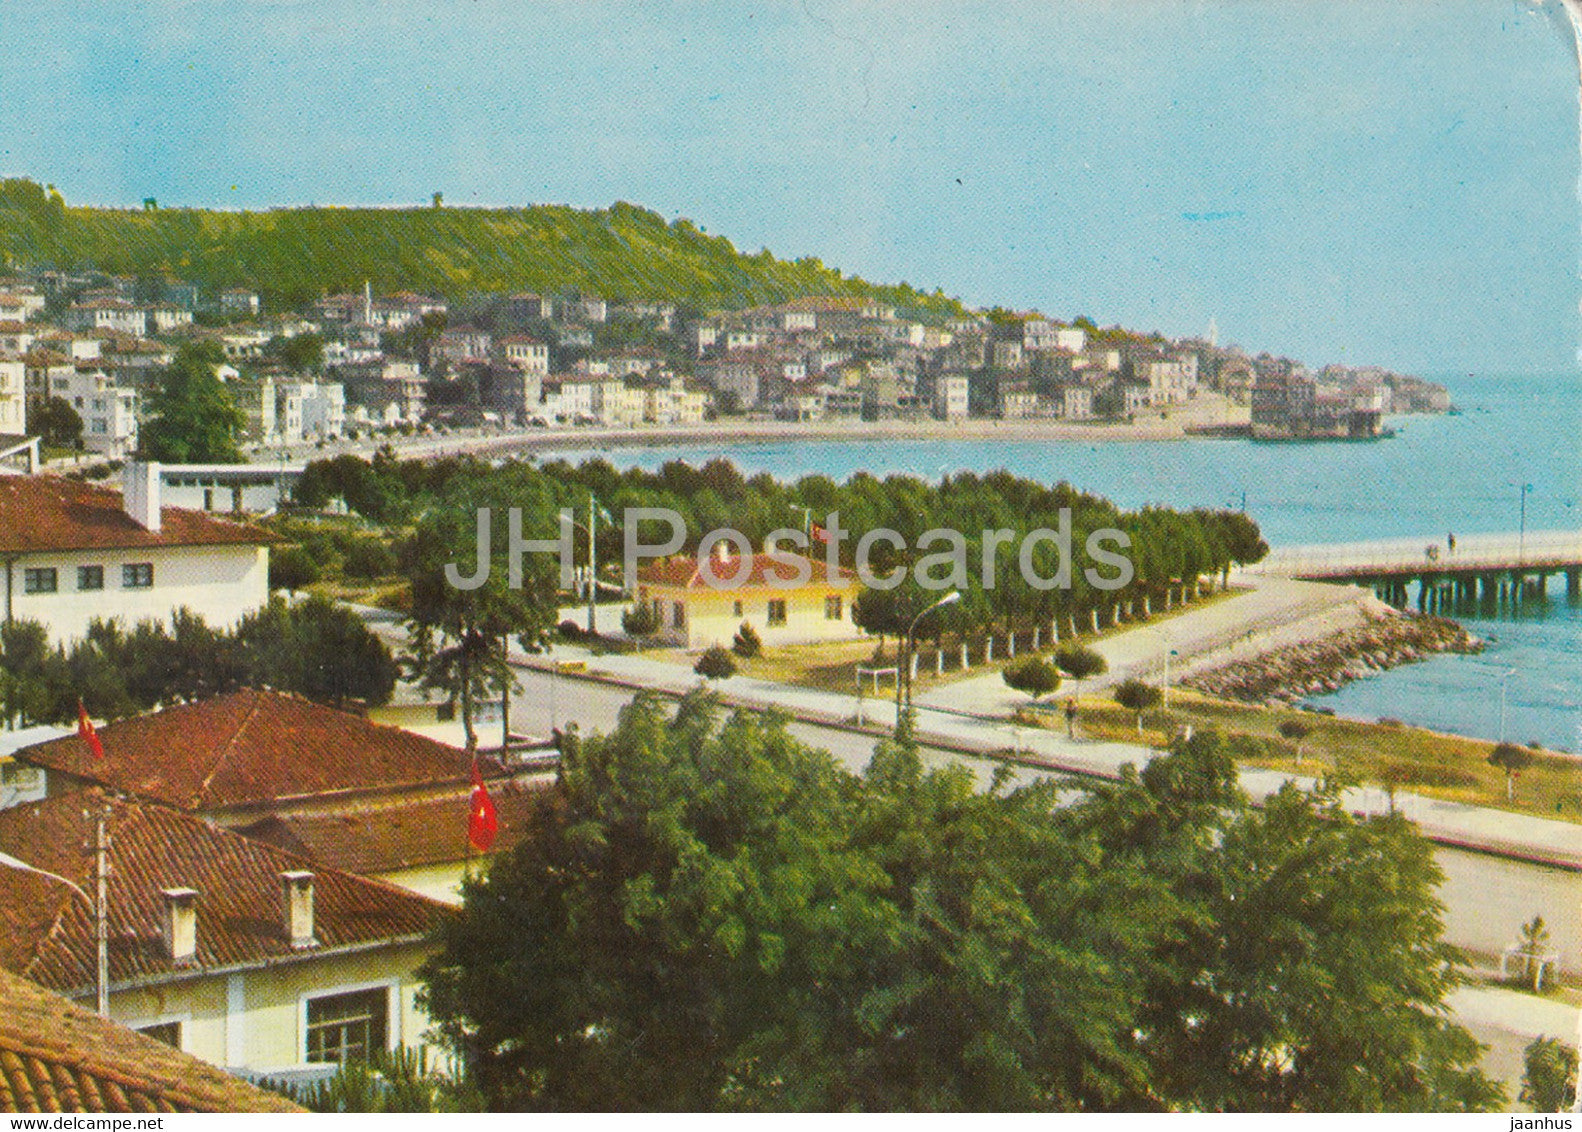 Unye - general view - Turkey - unused - JH Postcards